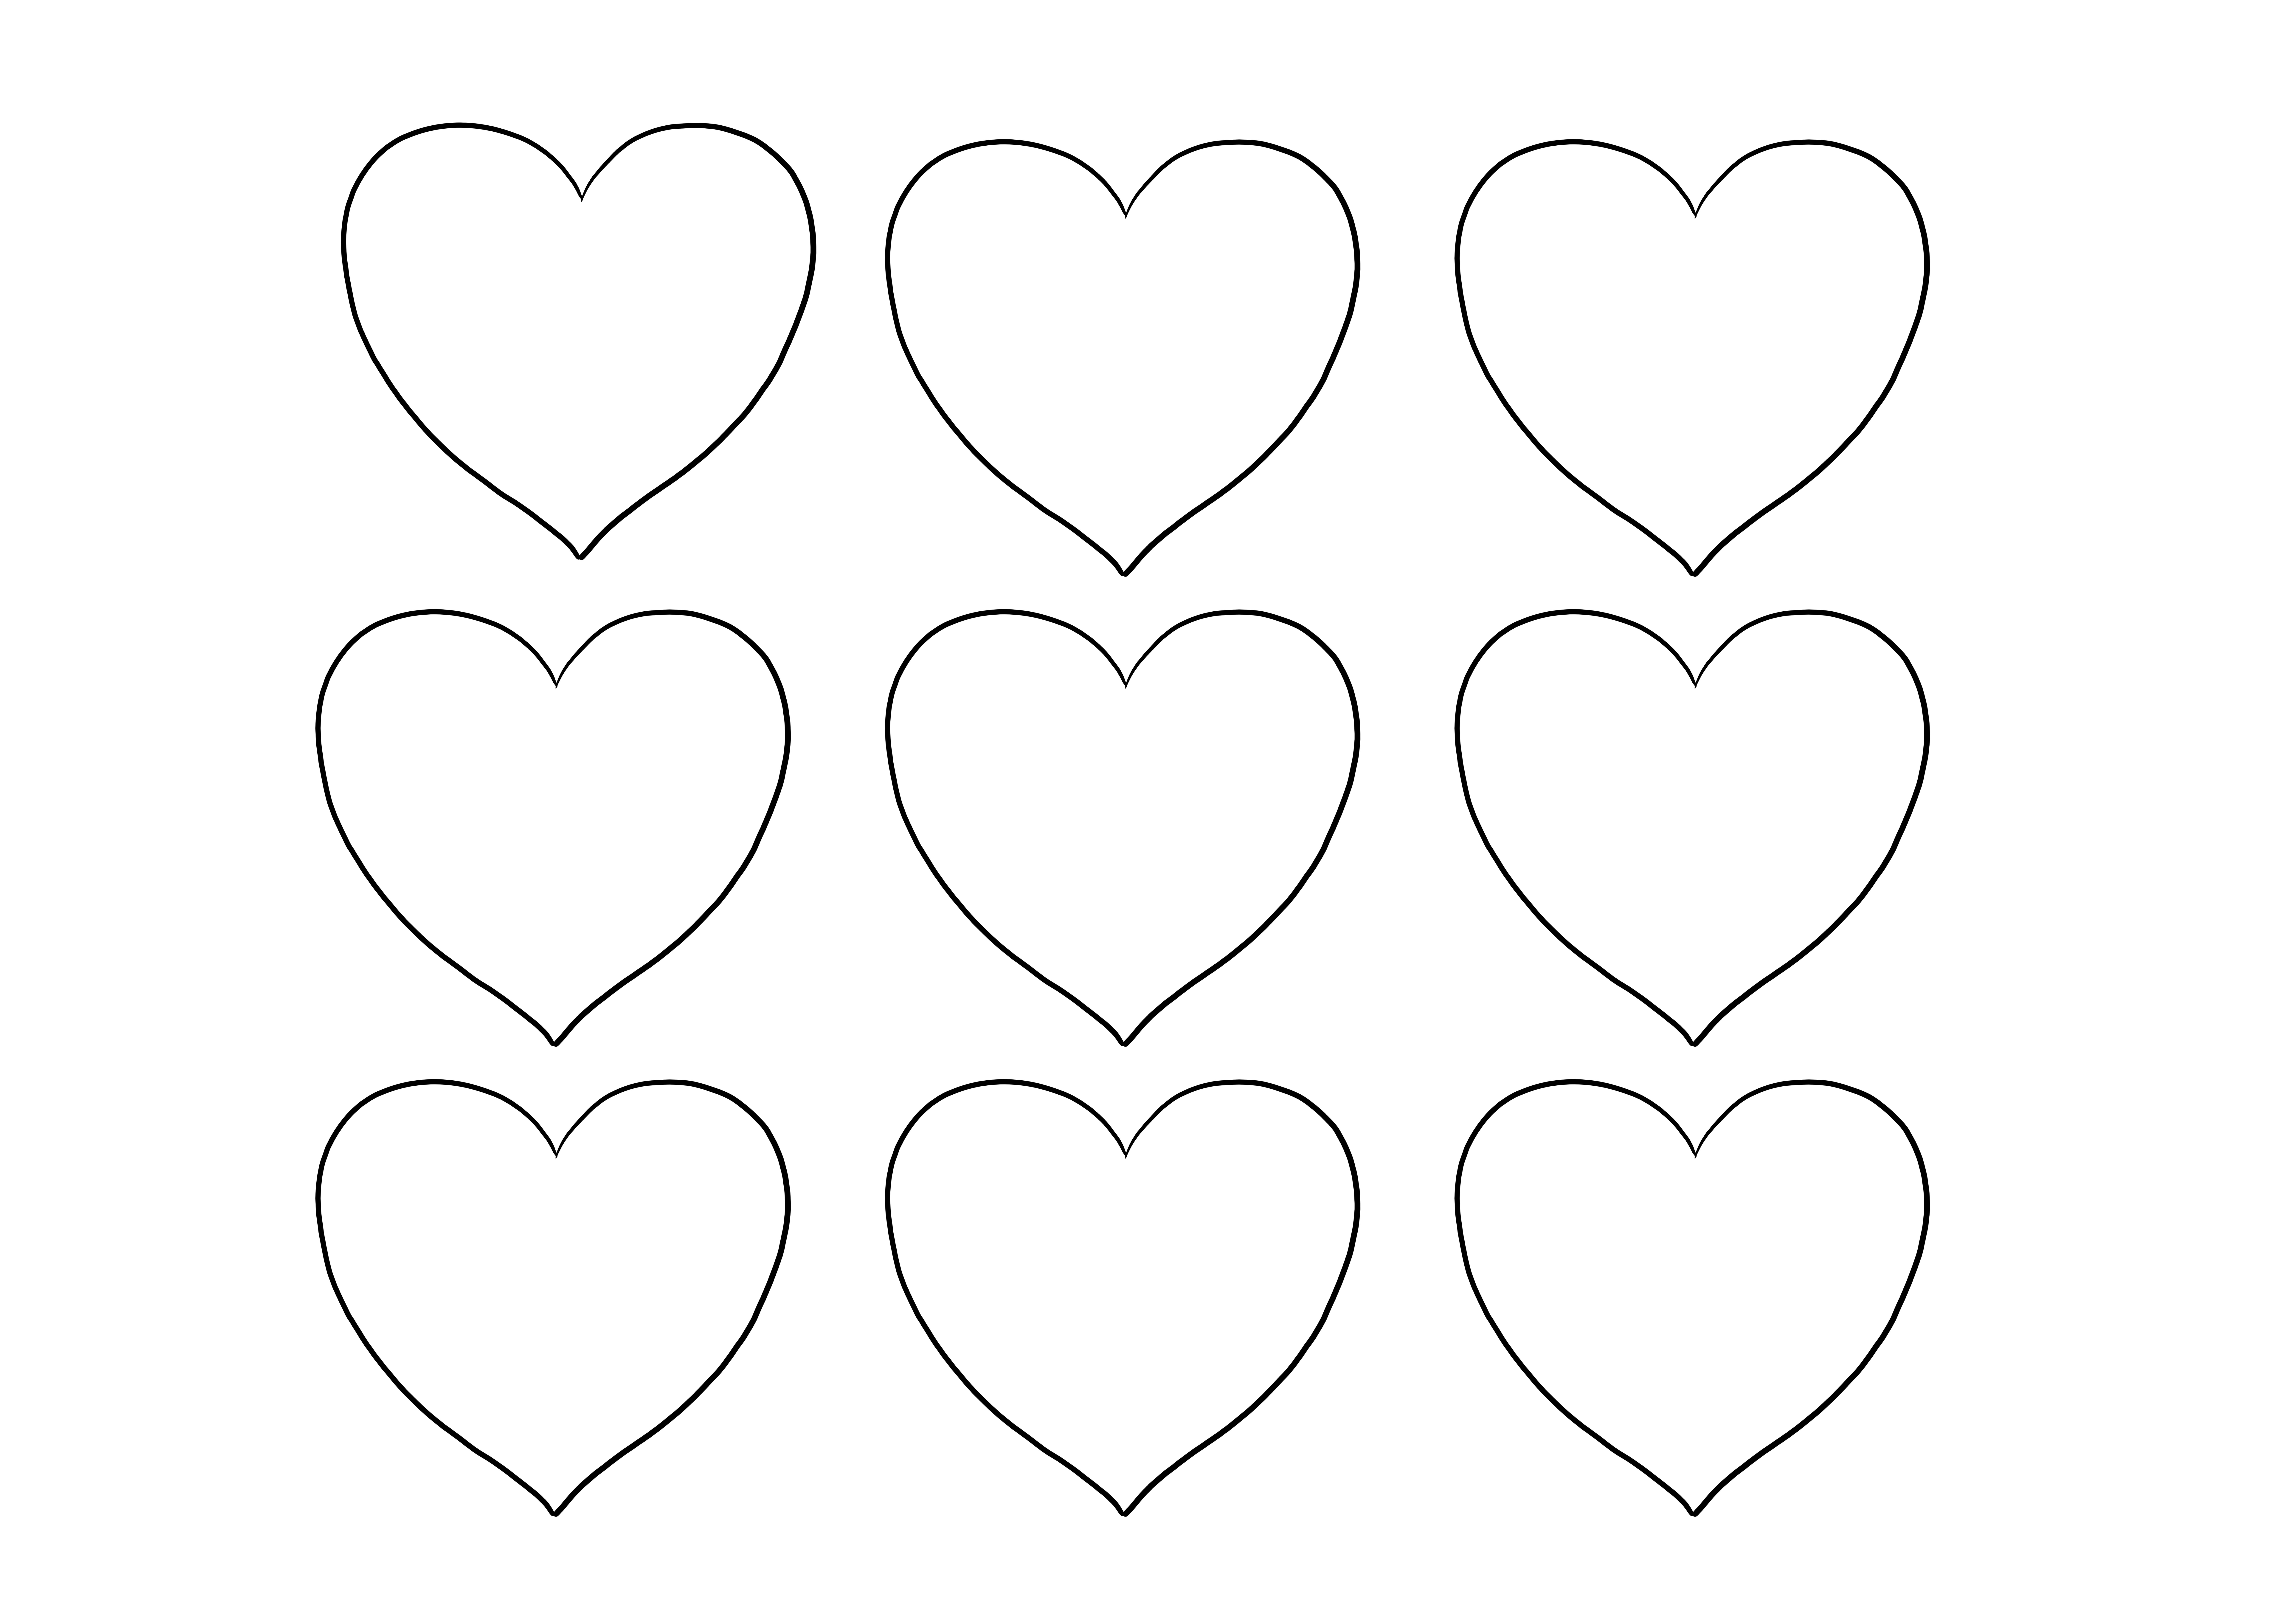 Colorear fácilmente los corazones del día de San Valentín para imprimir y crear proyectos gratis